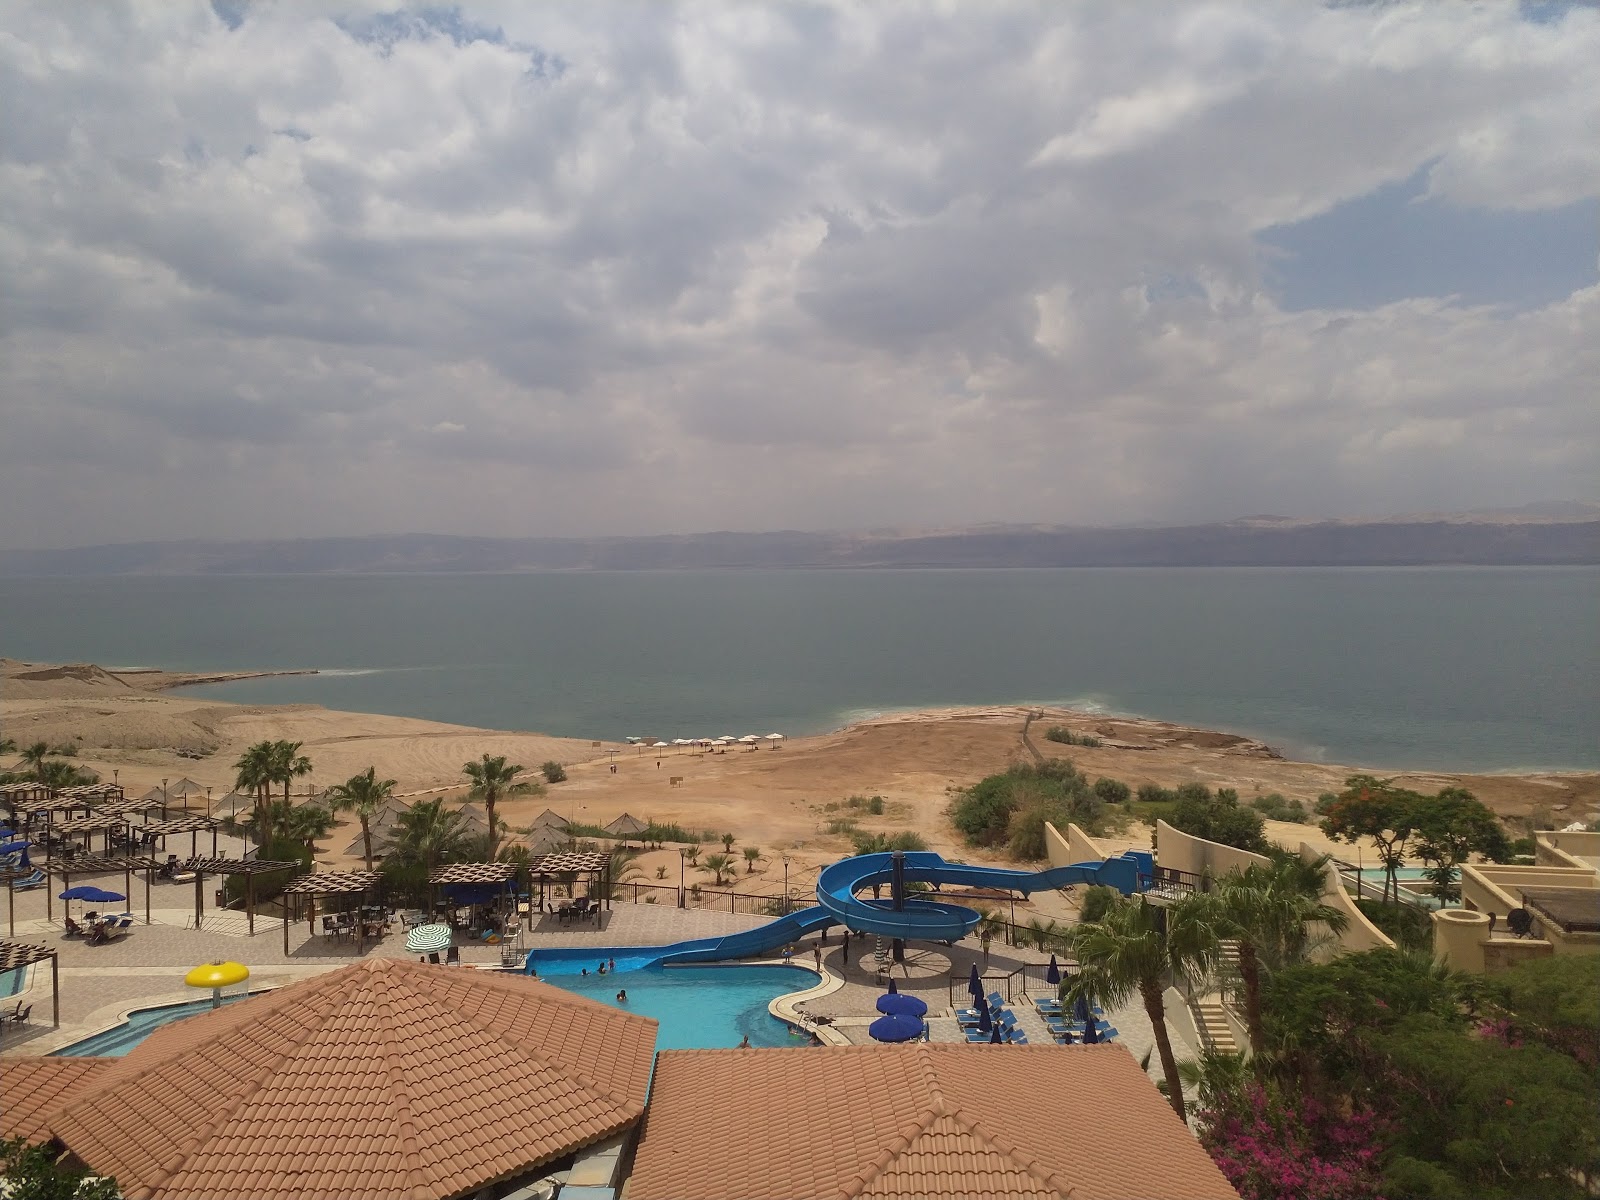 Fotografija Dead Sea Beach priljubljeno mesto med poznavalci sprostitve